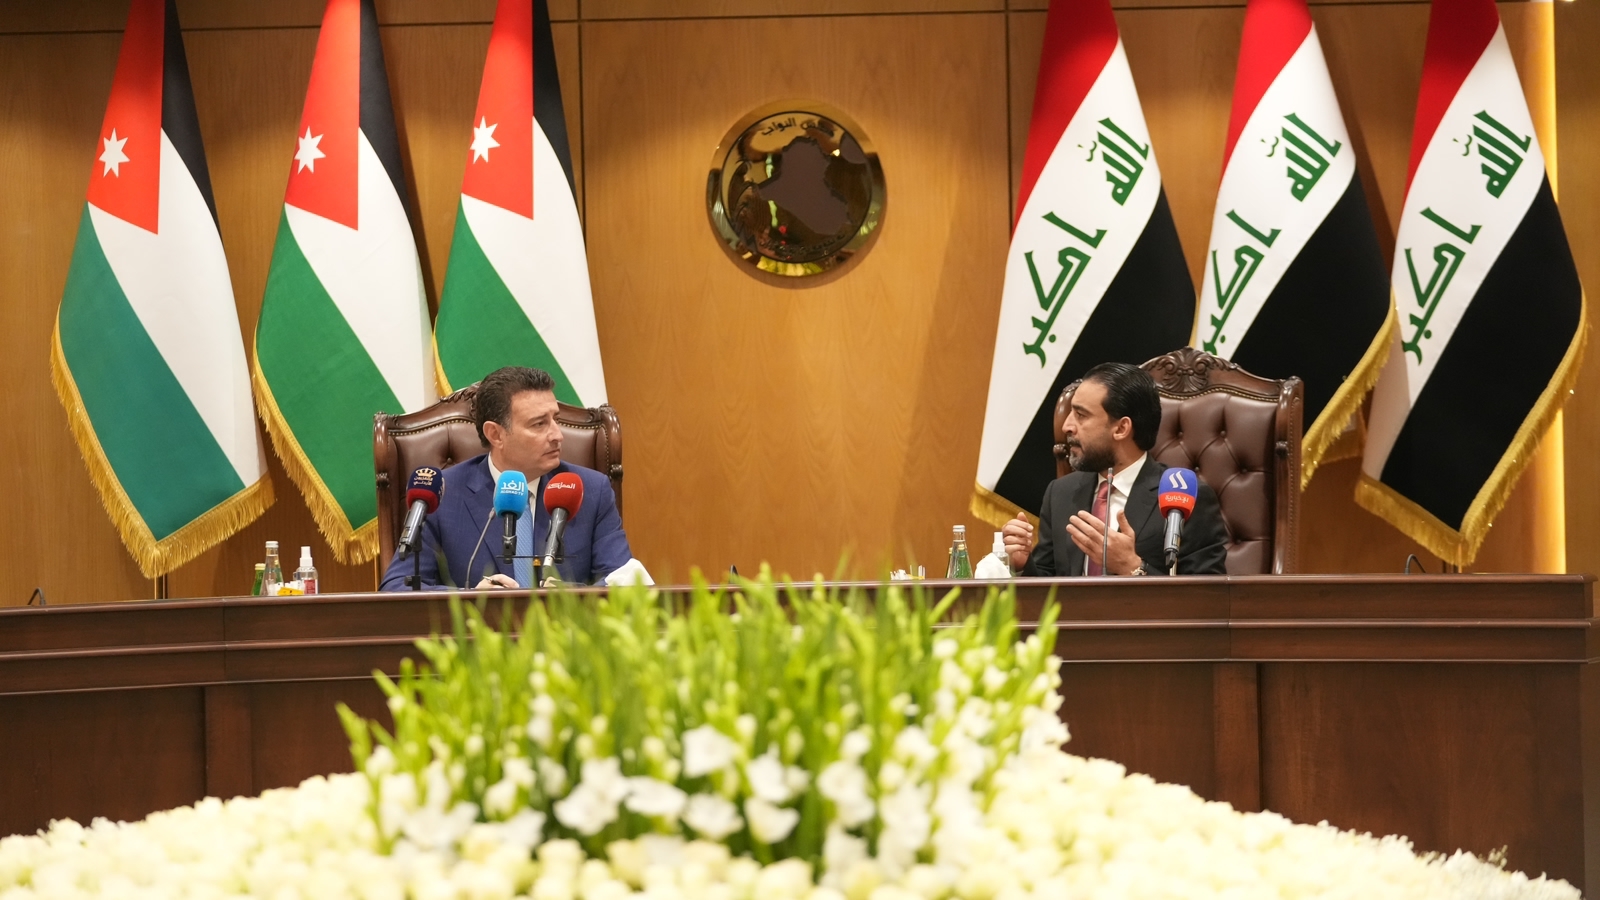 البرلمان العراقي يعلن دعم إنجاز الربط الكهربائي ومد أنبوب النفط لميناء العقبة